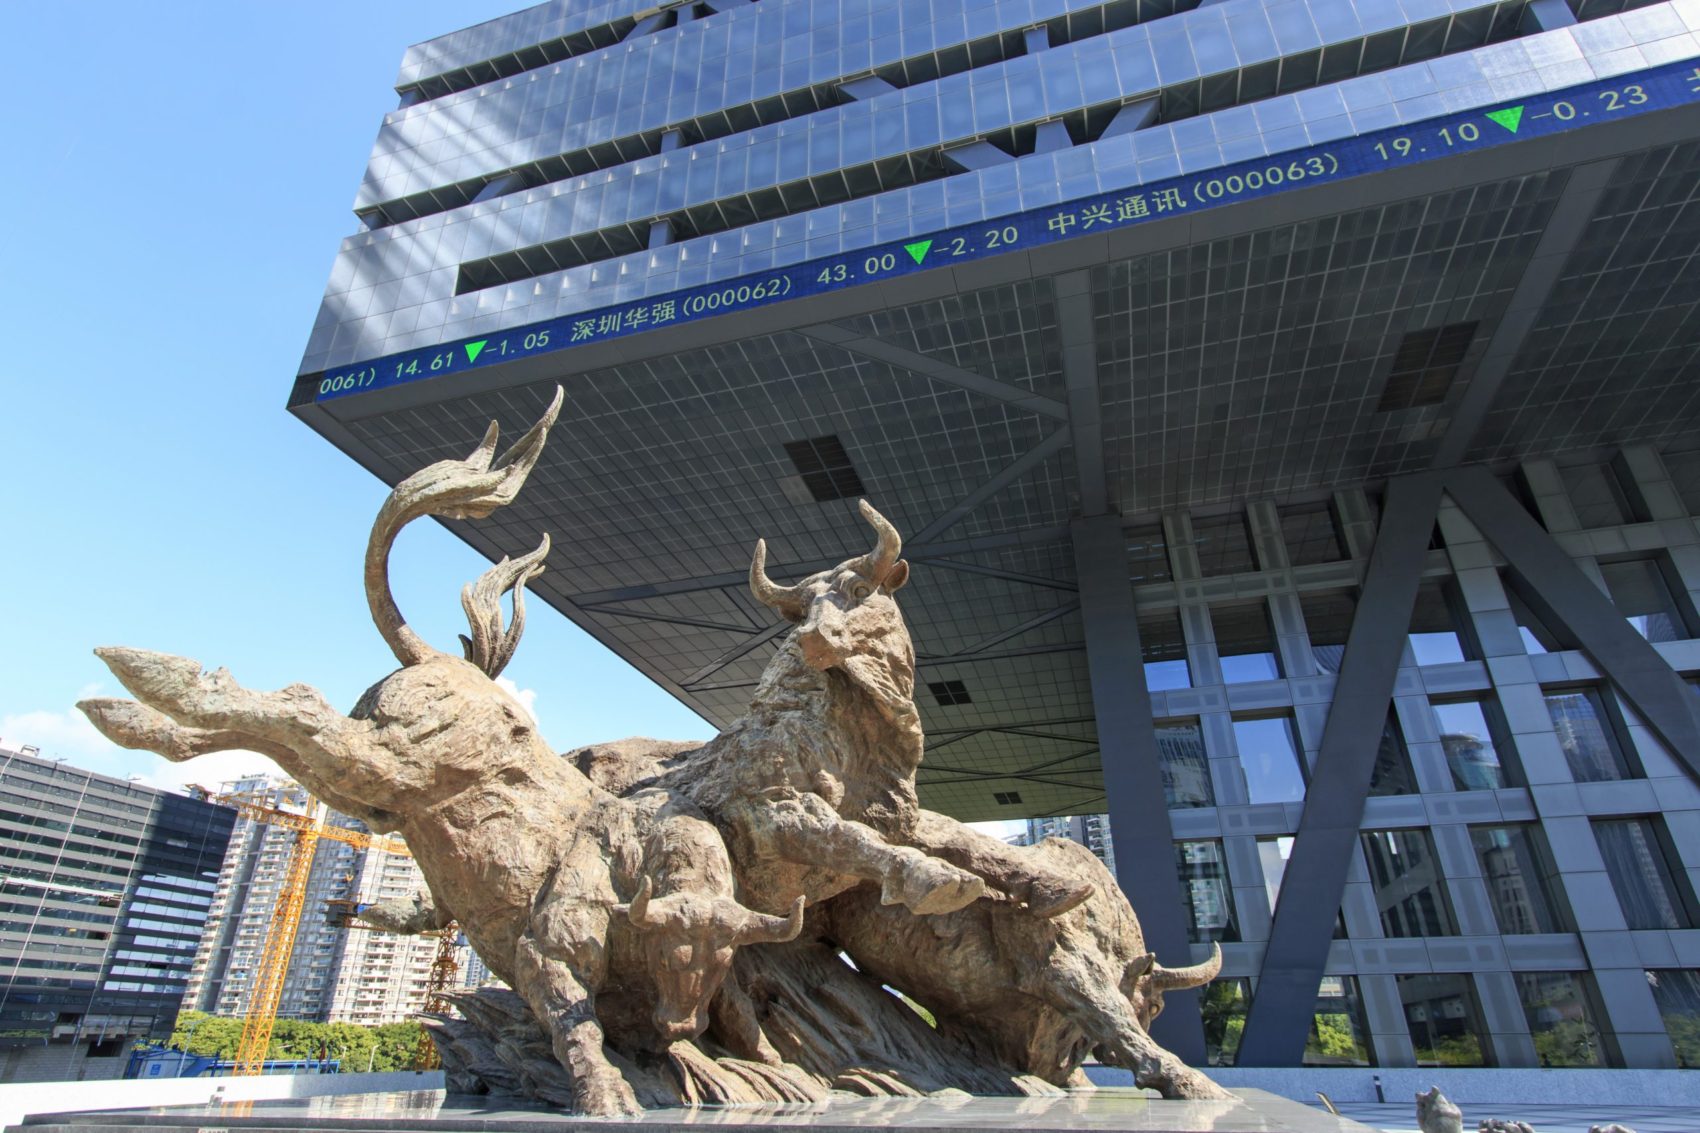 China verzeichnet massive Kapitalabflüsse / Investoren skeptisch wegen Russland-Verbindung